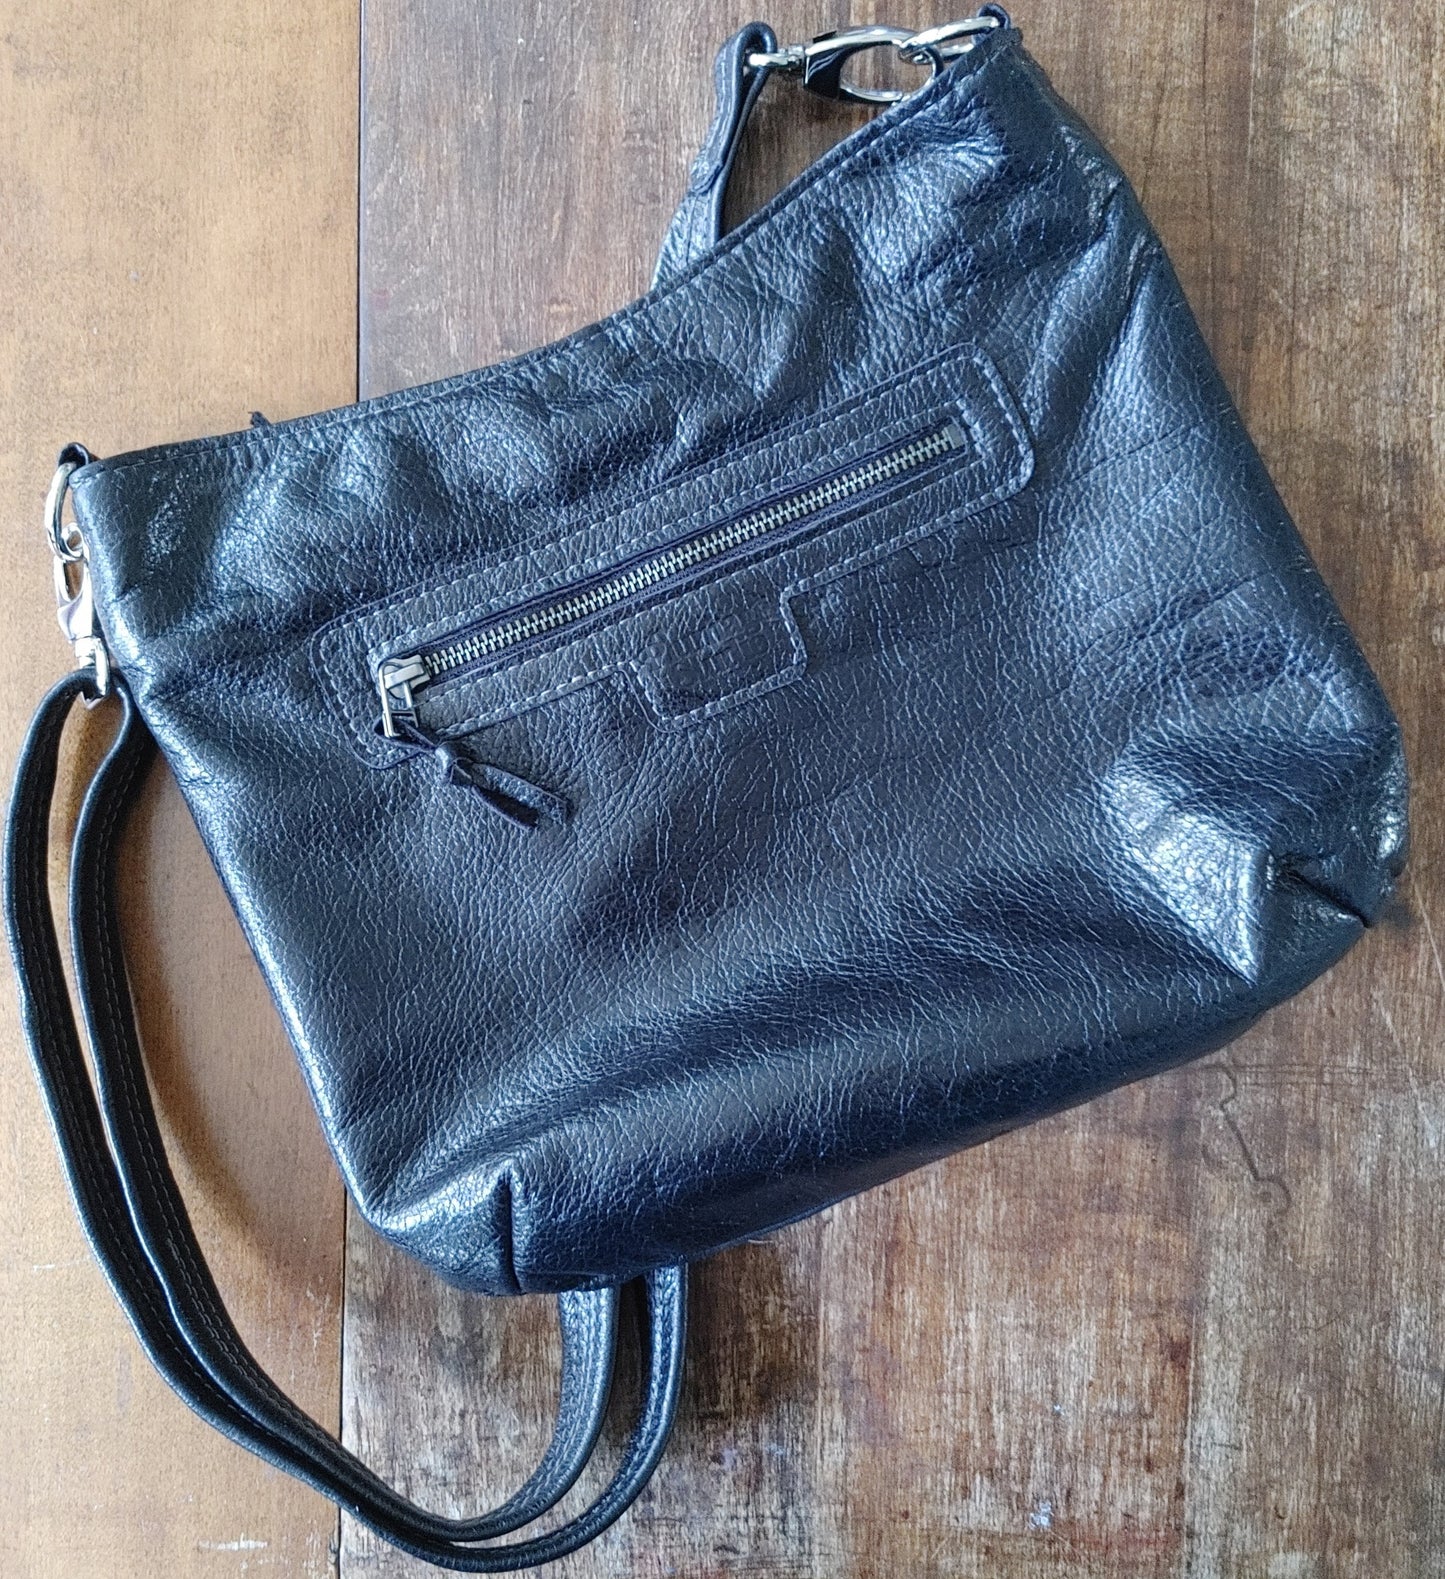 Sway Handbag in Black Leather and Harris Tweed